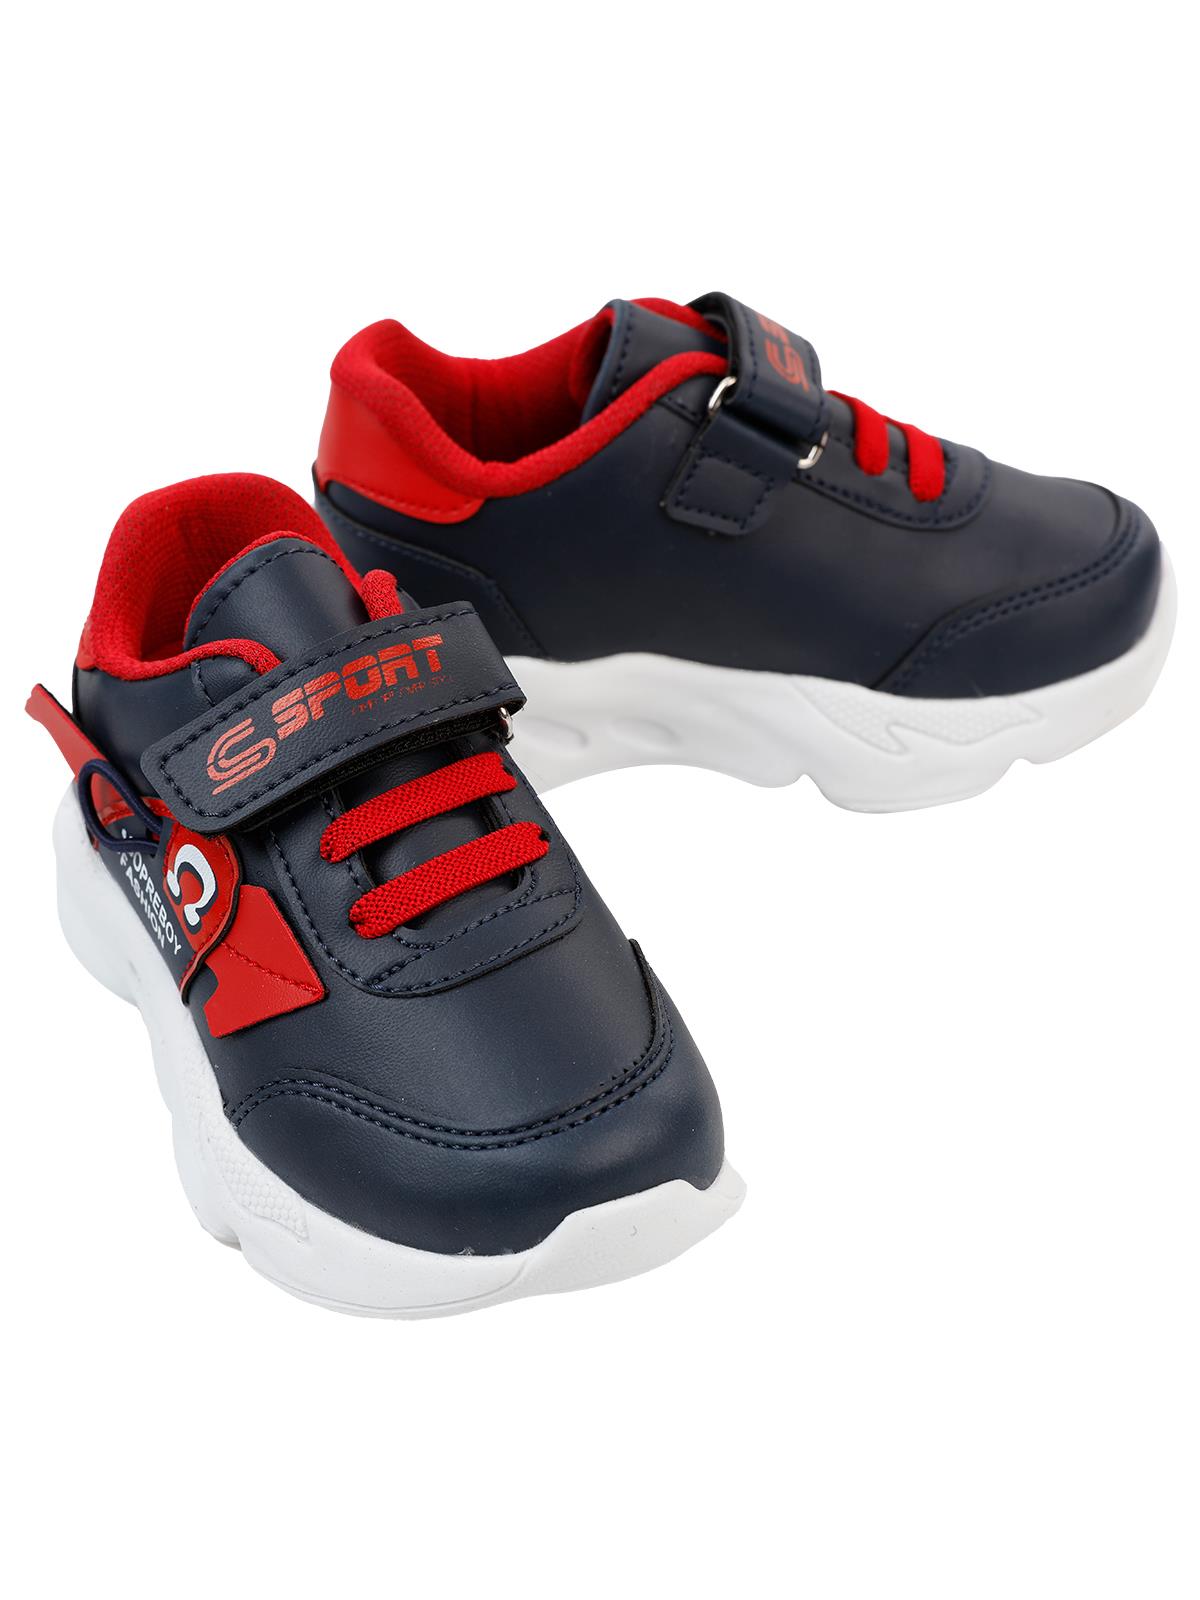 Sport Erkek Çocuk Spor Ayakkabı 30-35 Numara Lacivert-Kırmızı